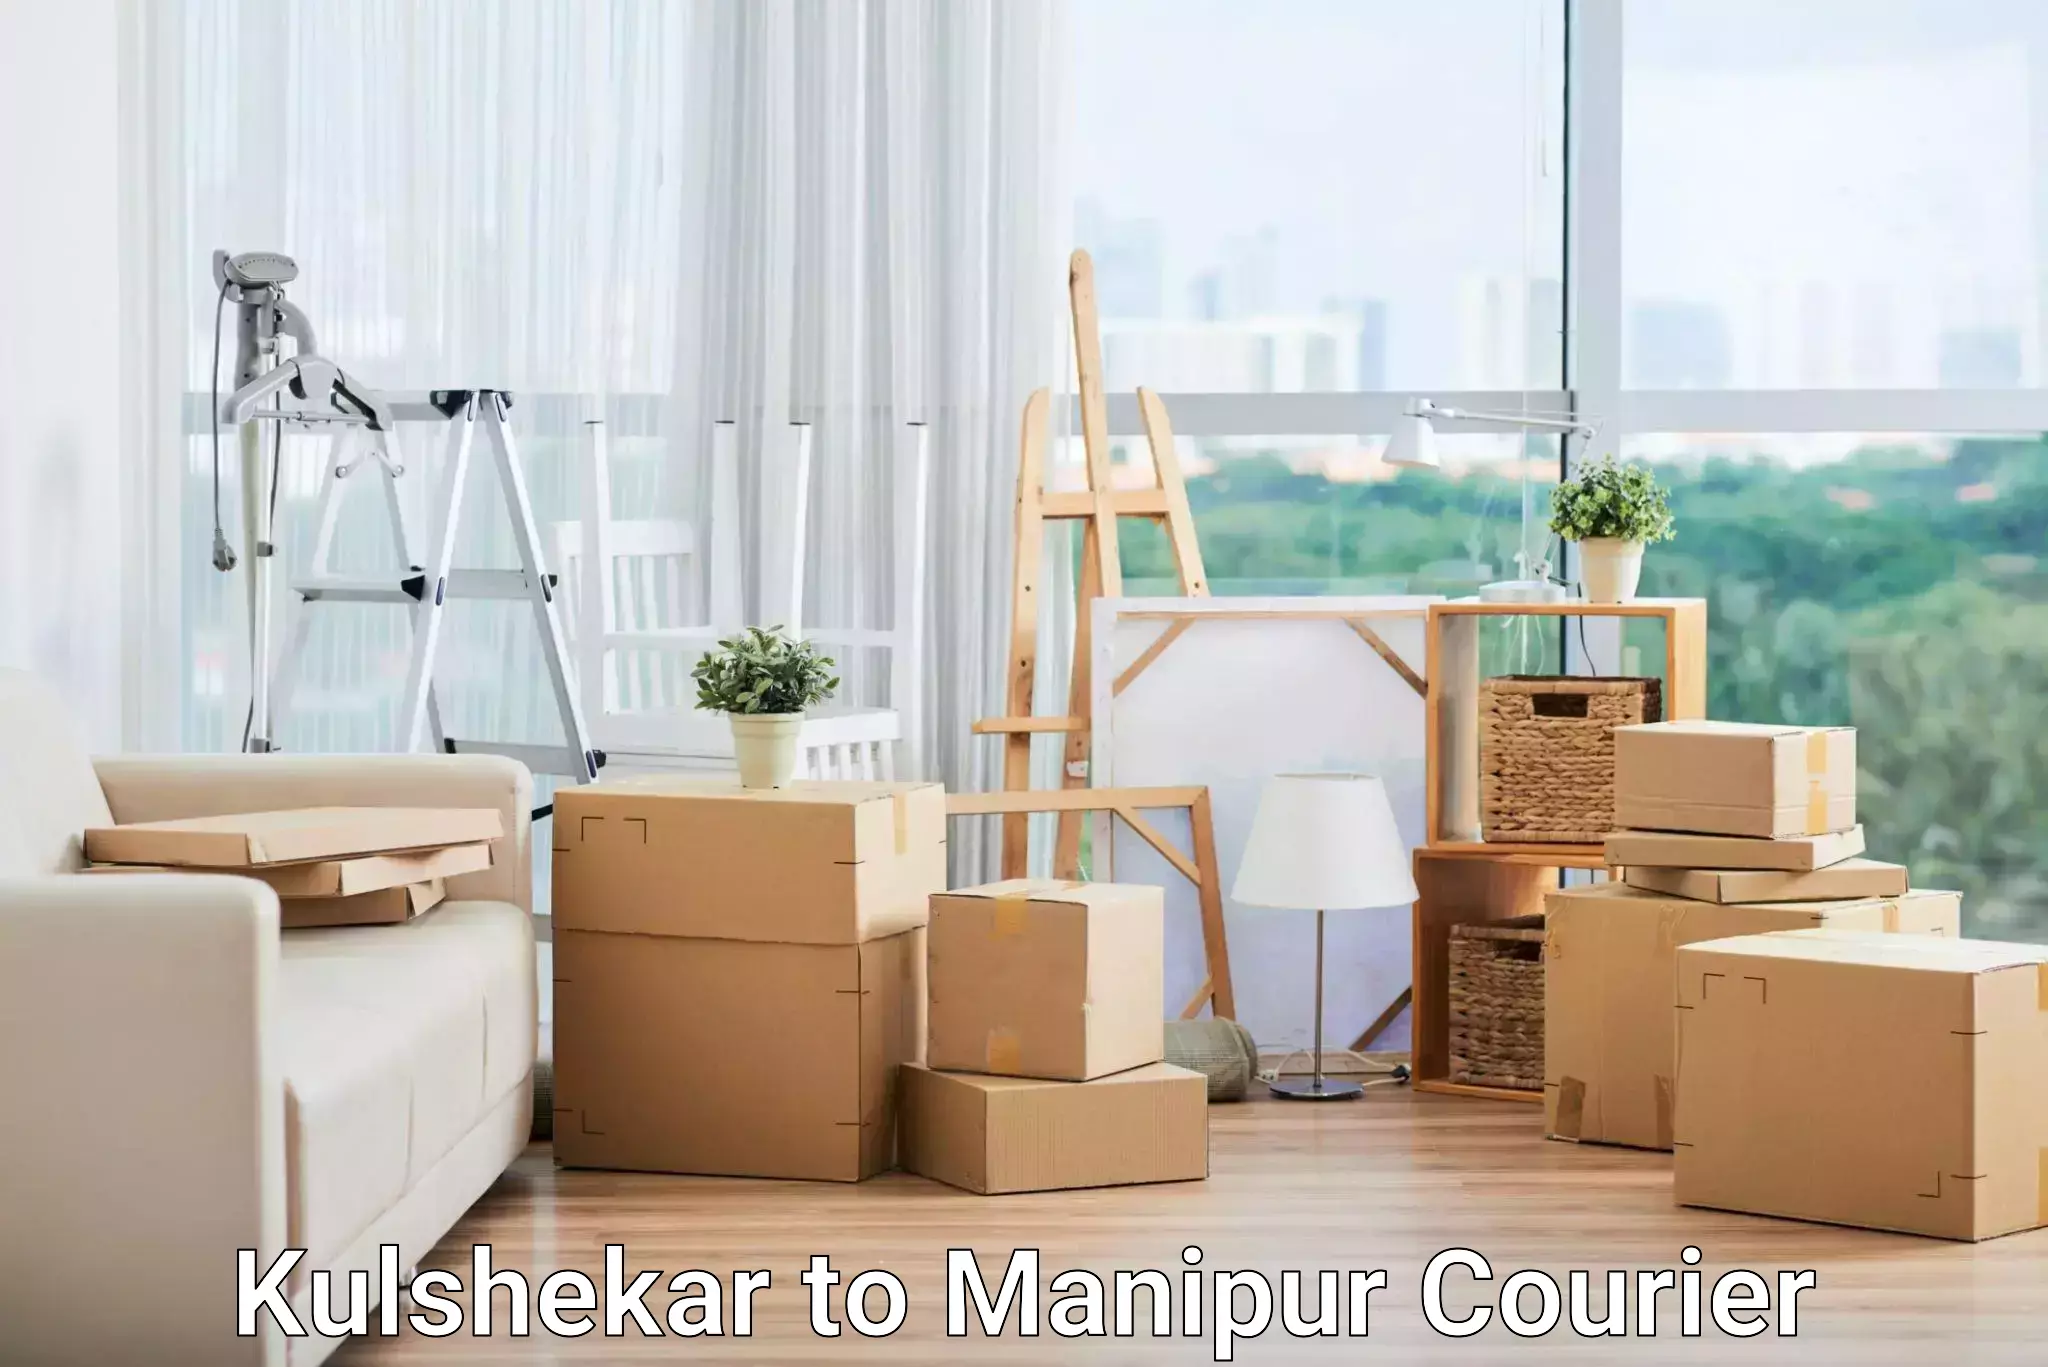 Bulk courier orders Kulshekar to Manipur